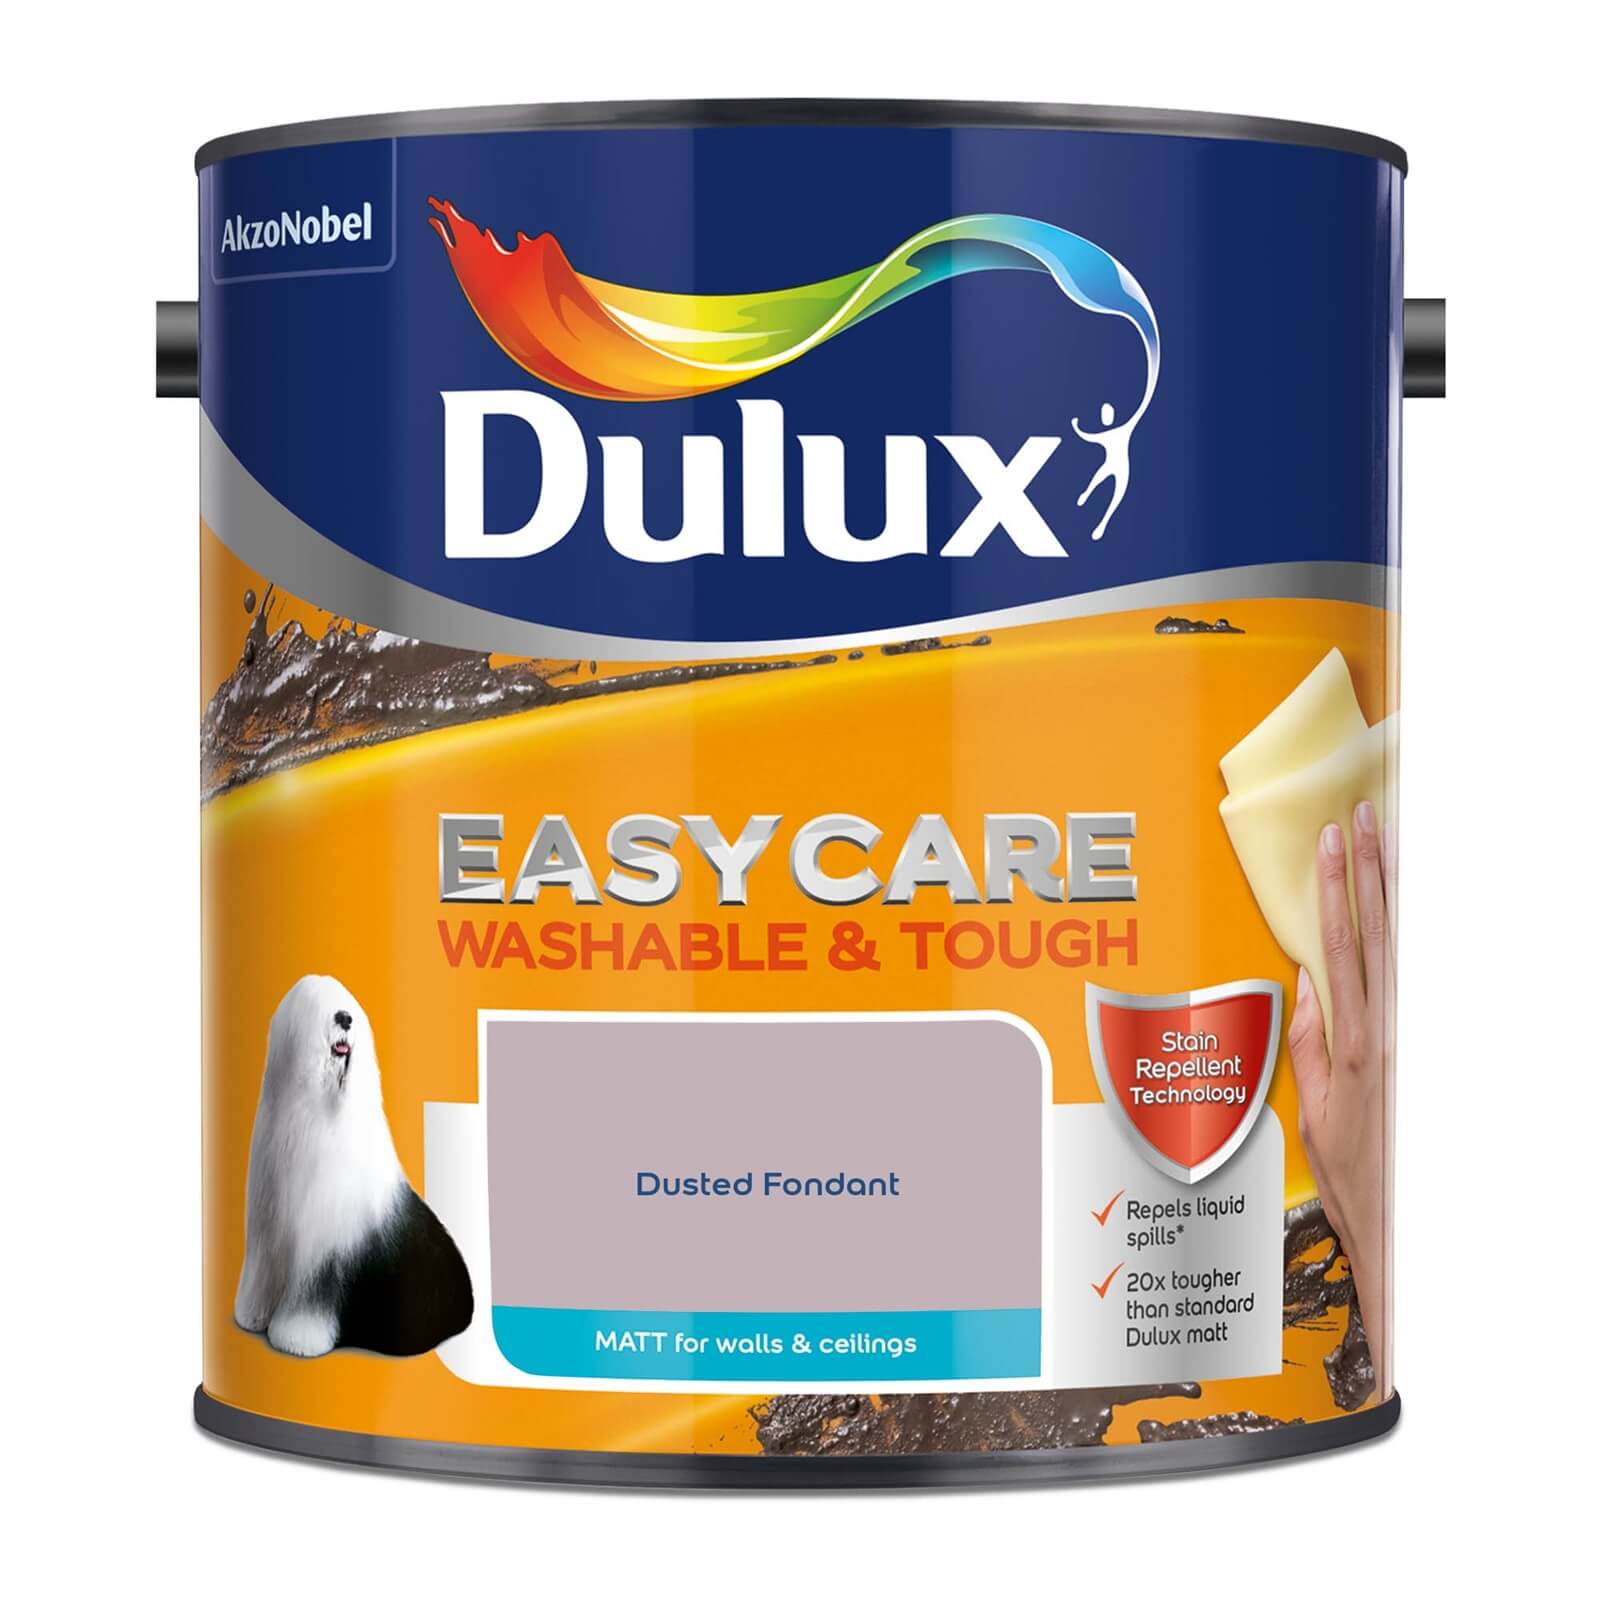 Dulux Easycare Washable & Tough Matt Paint Dusted Fondant - 2.5L